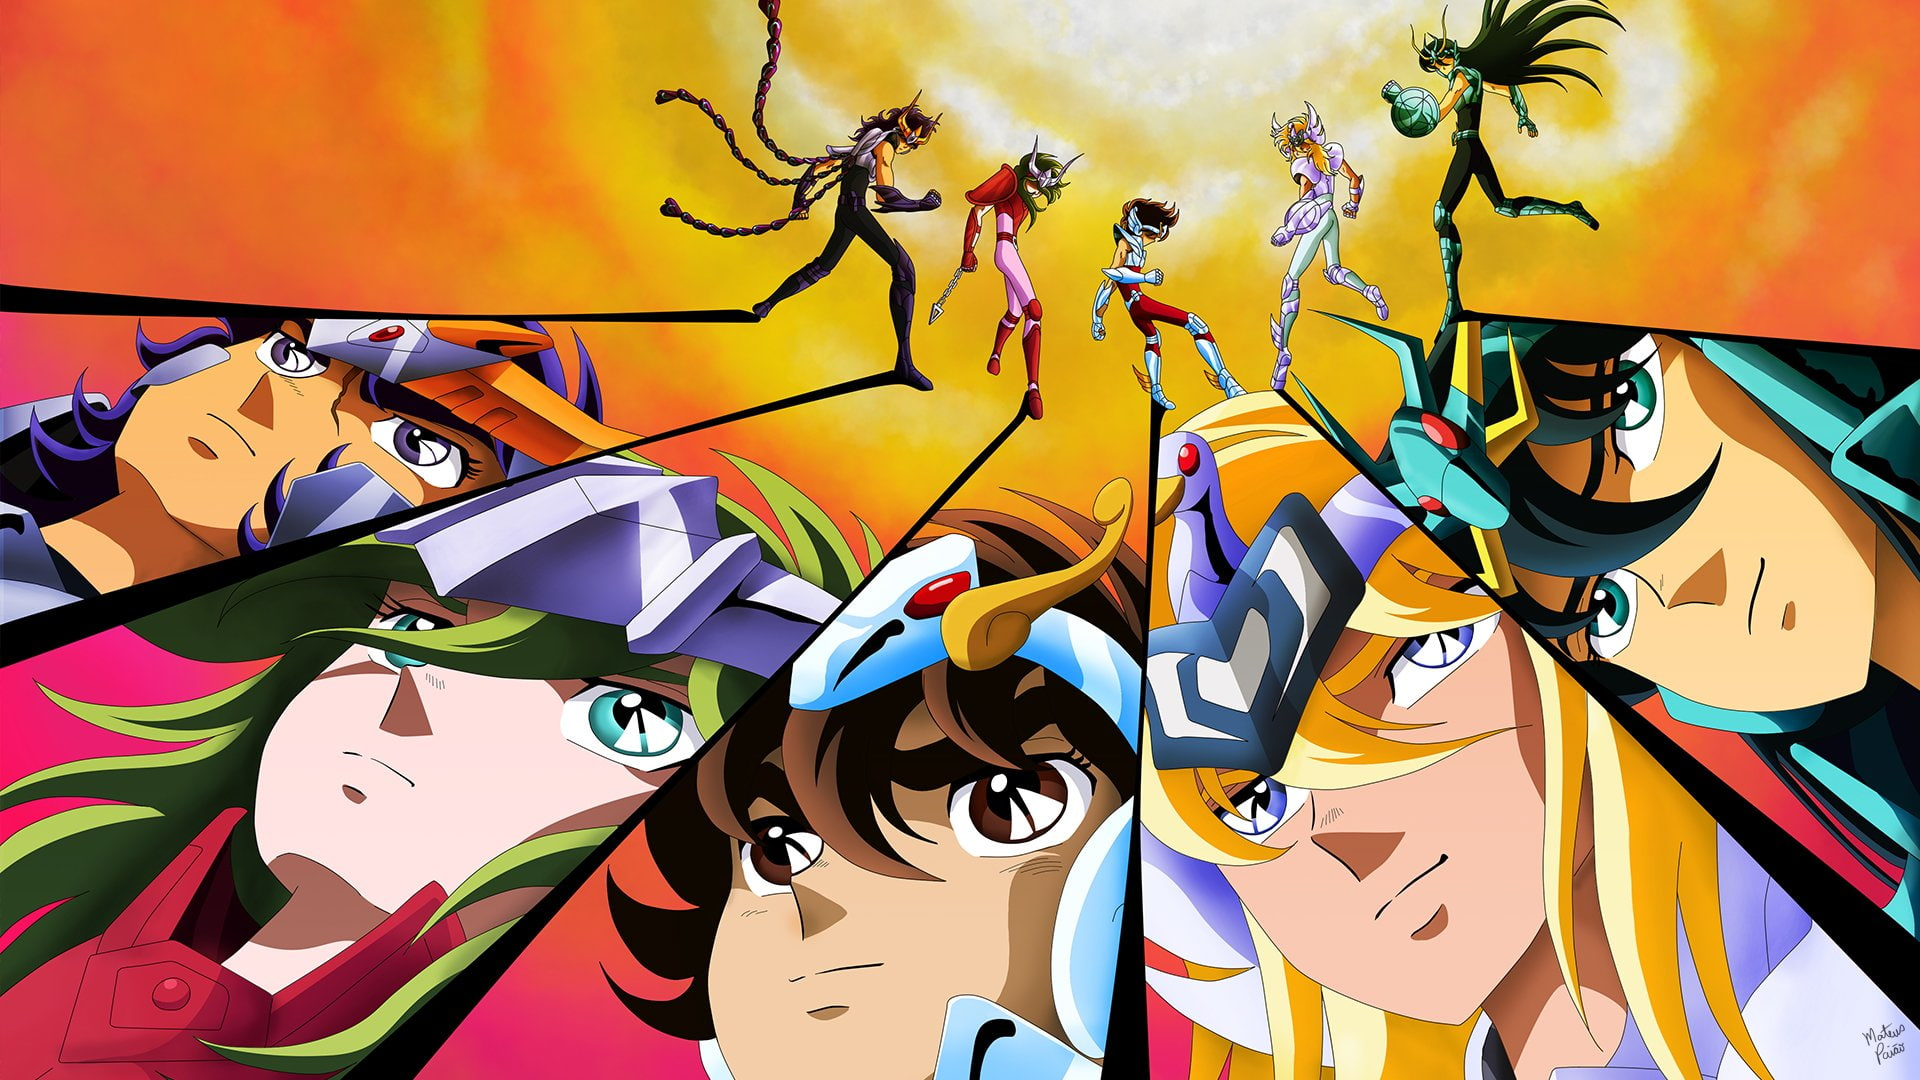 Wallpaper Anime, Saint Seiya, Multi Colored, Saint Seiya Wallpaper, Anime